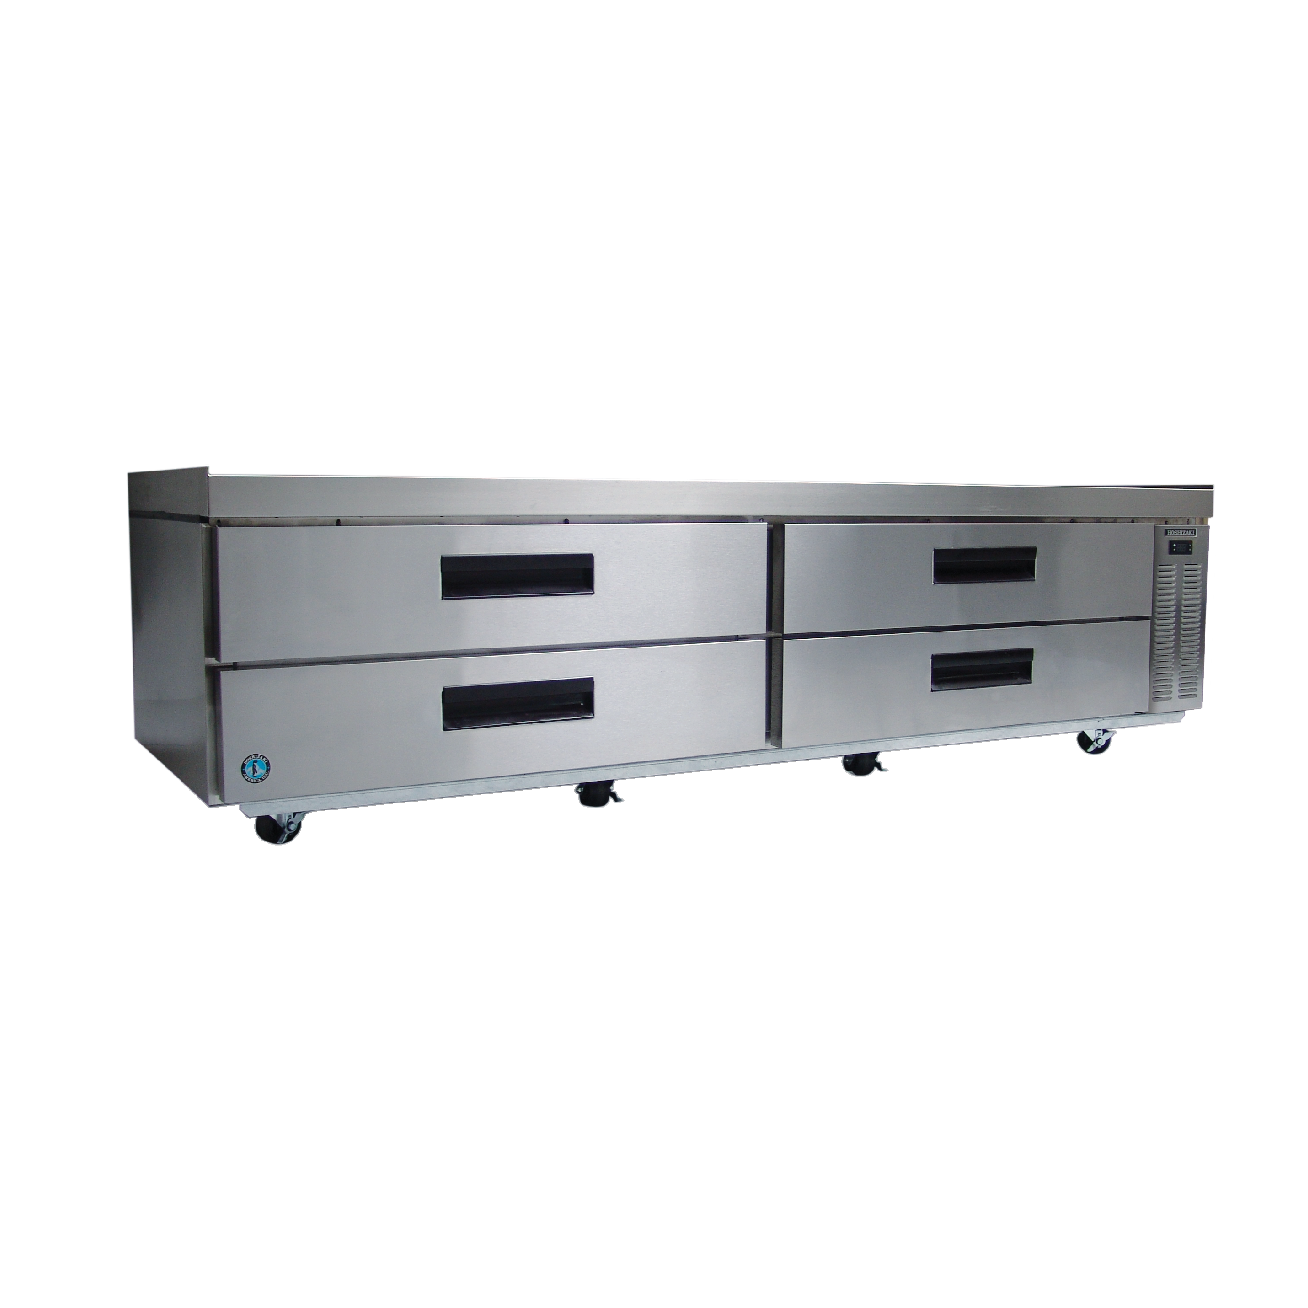 superior-equipment-supply - Hoshizaki - Hoshizaki Stainless Steel 98" Wide Equipment Stand With Refrigerator